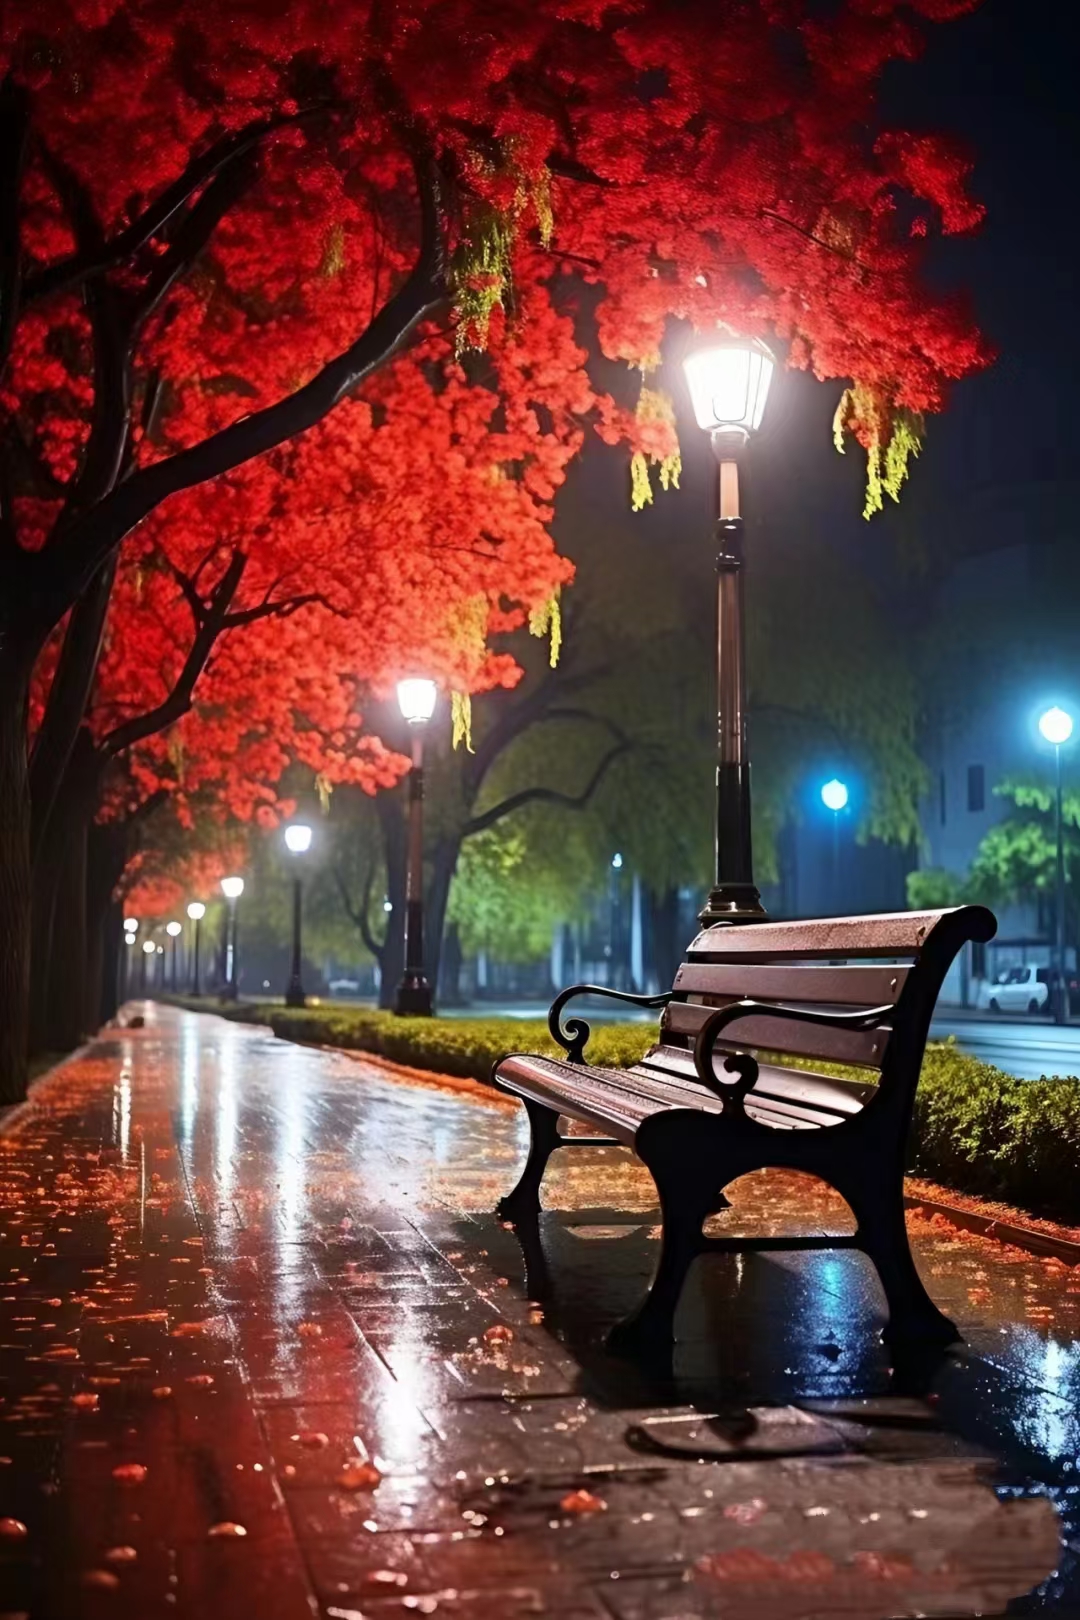 秋夜的街道,湿漉漉的马路映衬着灯杆和树木的影子,仿佛走进了一幅